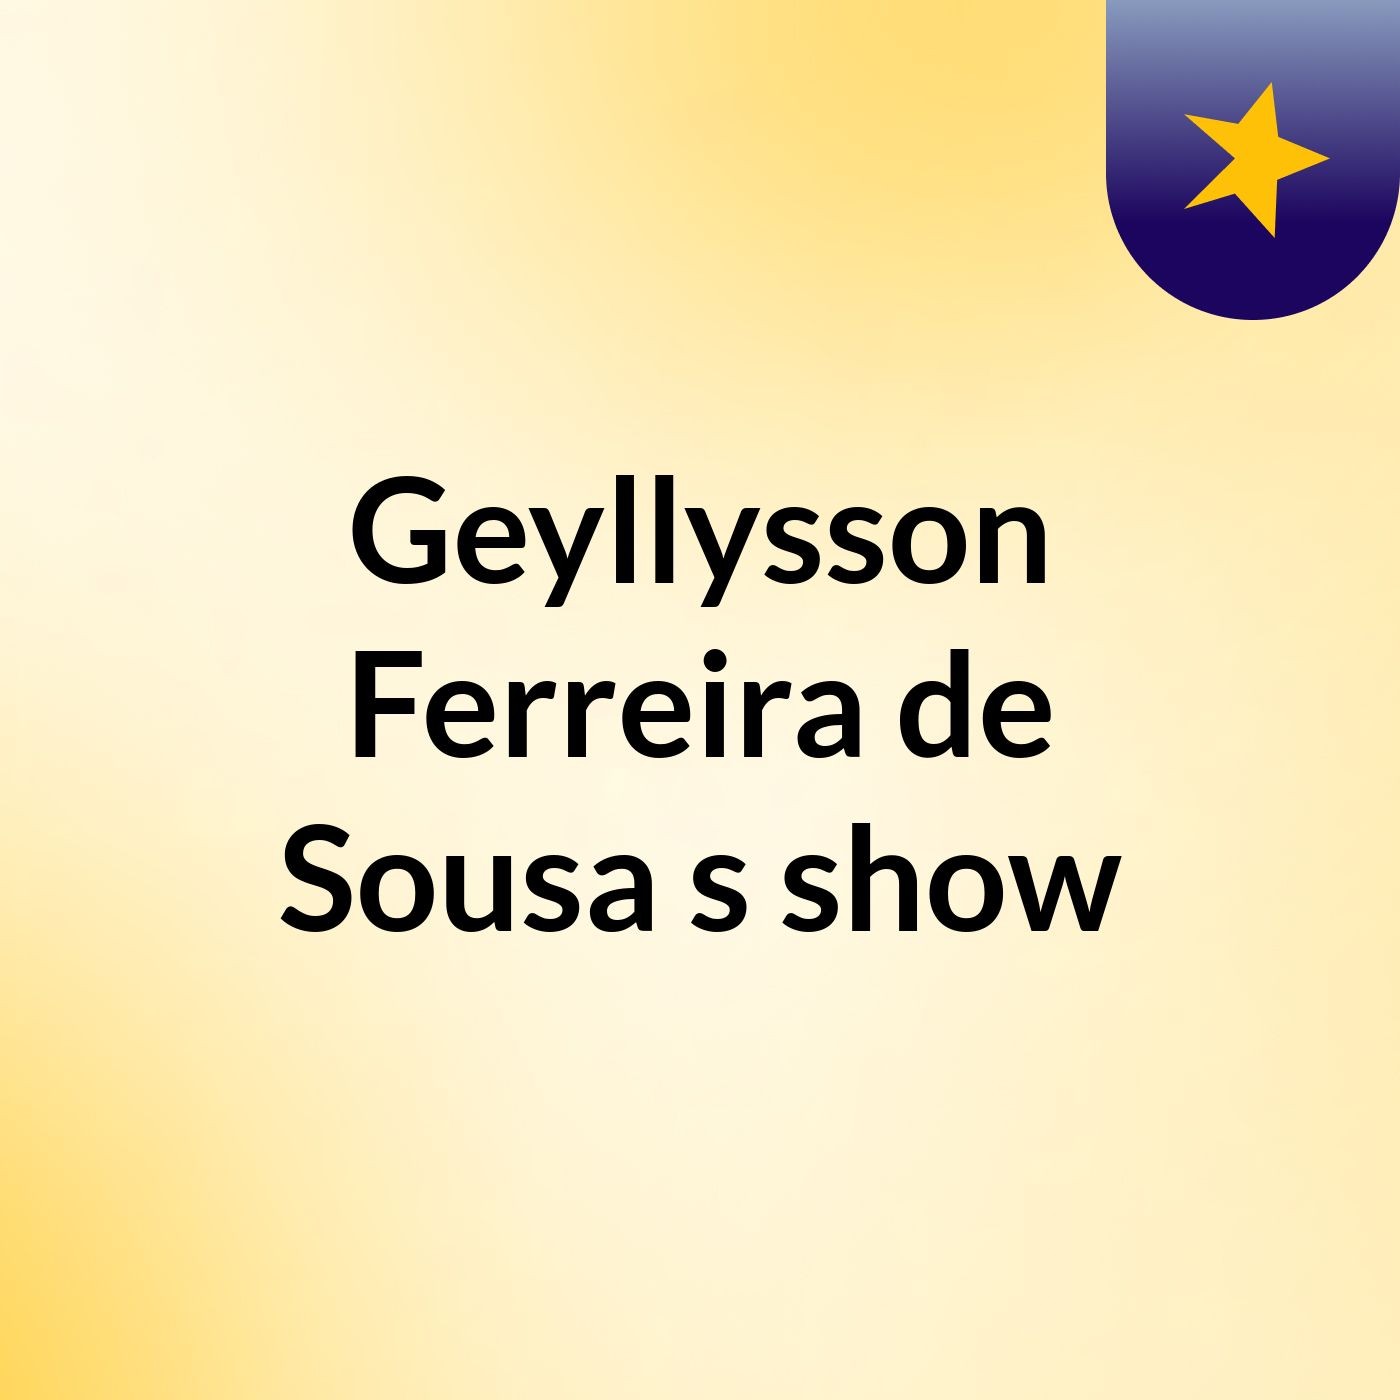 Geyllysson Ferreira de Sousa's show